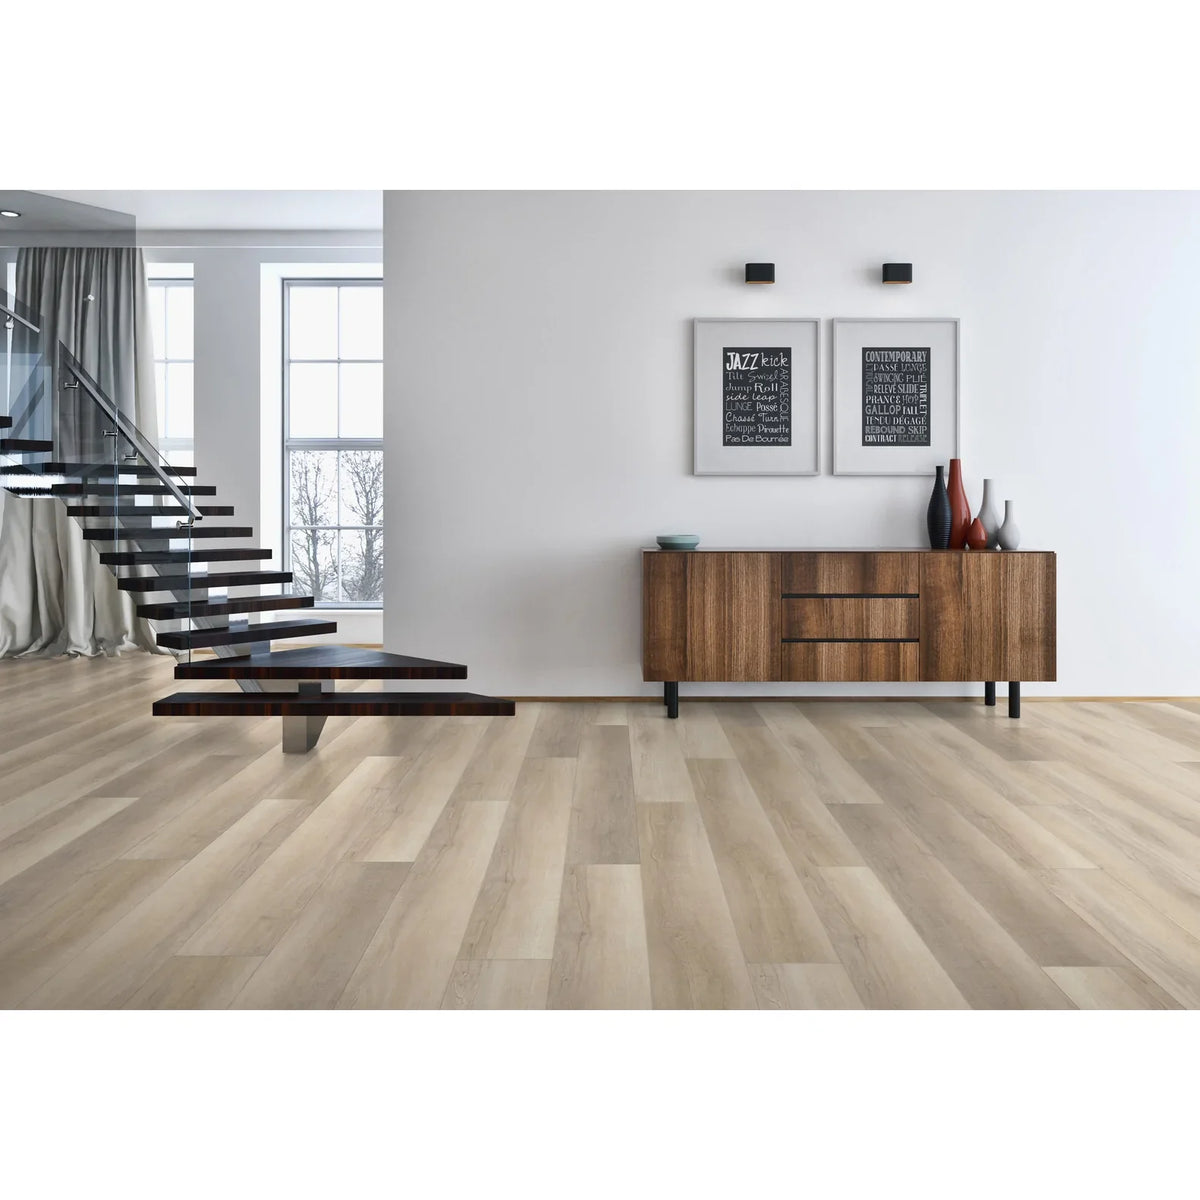 Tesoro - Timberlux Luxury Engineered Planks - Sandalwood Room Scene